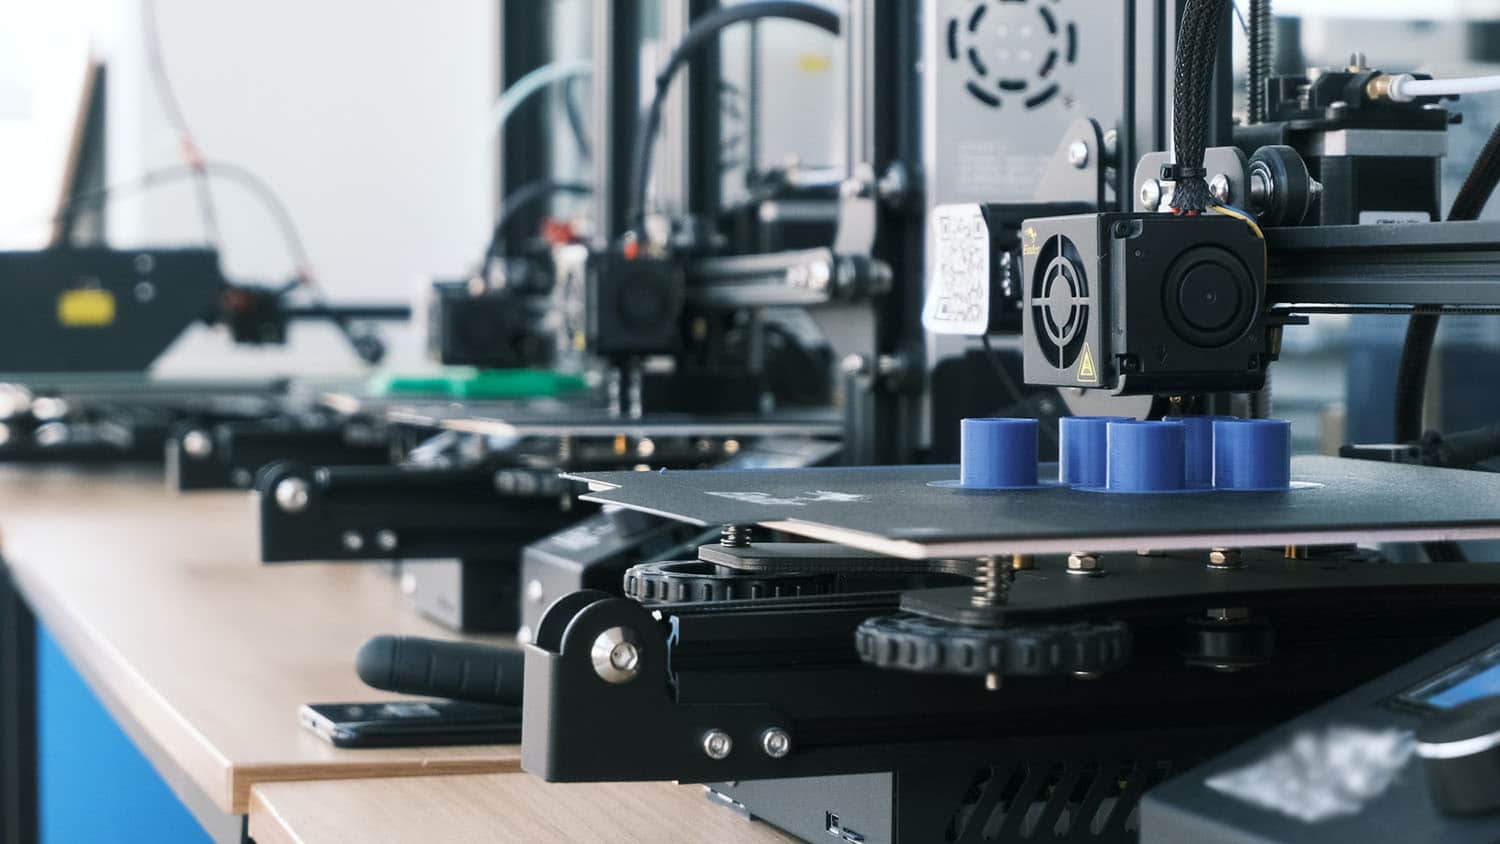 几台3d打印机排在工作台上;其中一个是打印一个物体